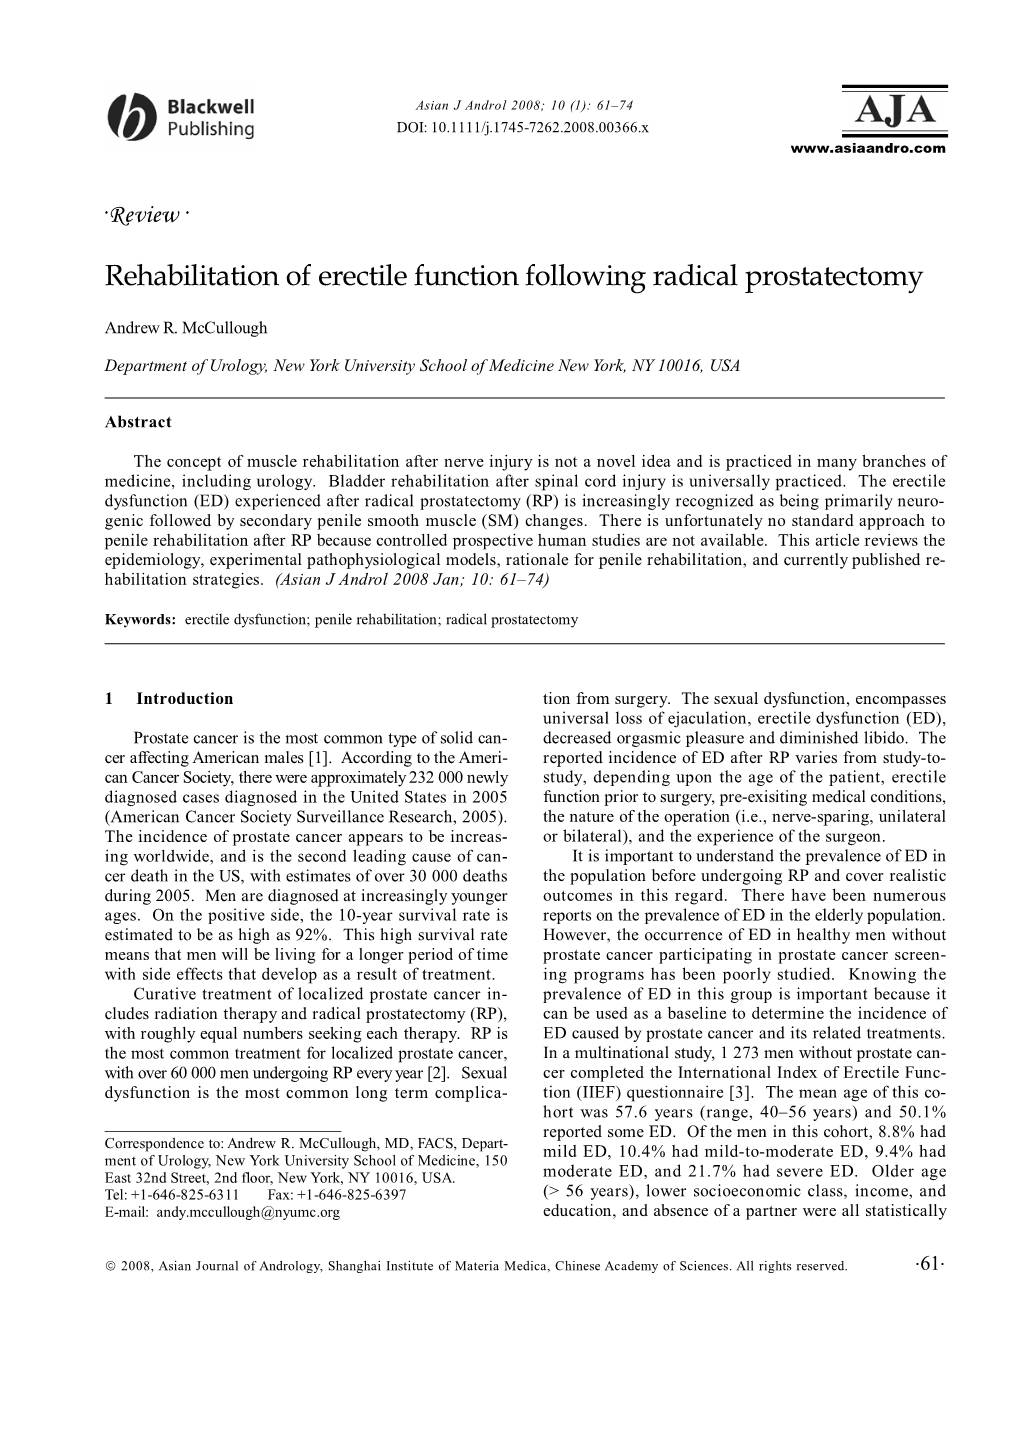 Rehabilitation of Erectile Function Following Radical Prostatectomy